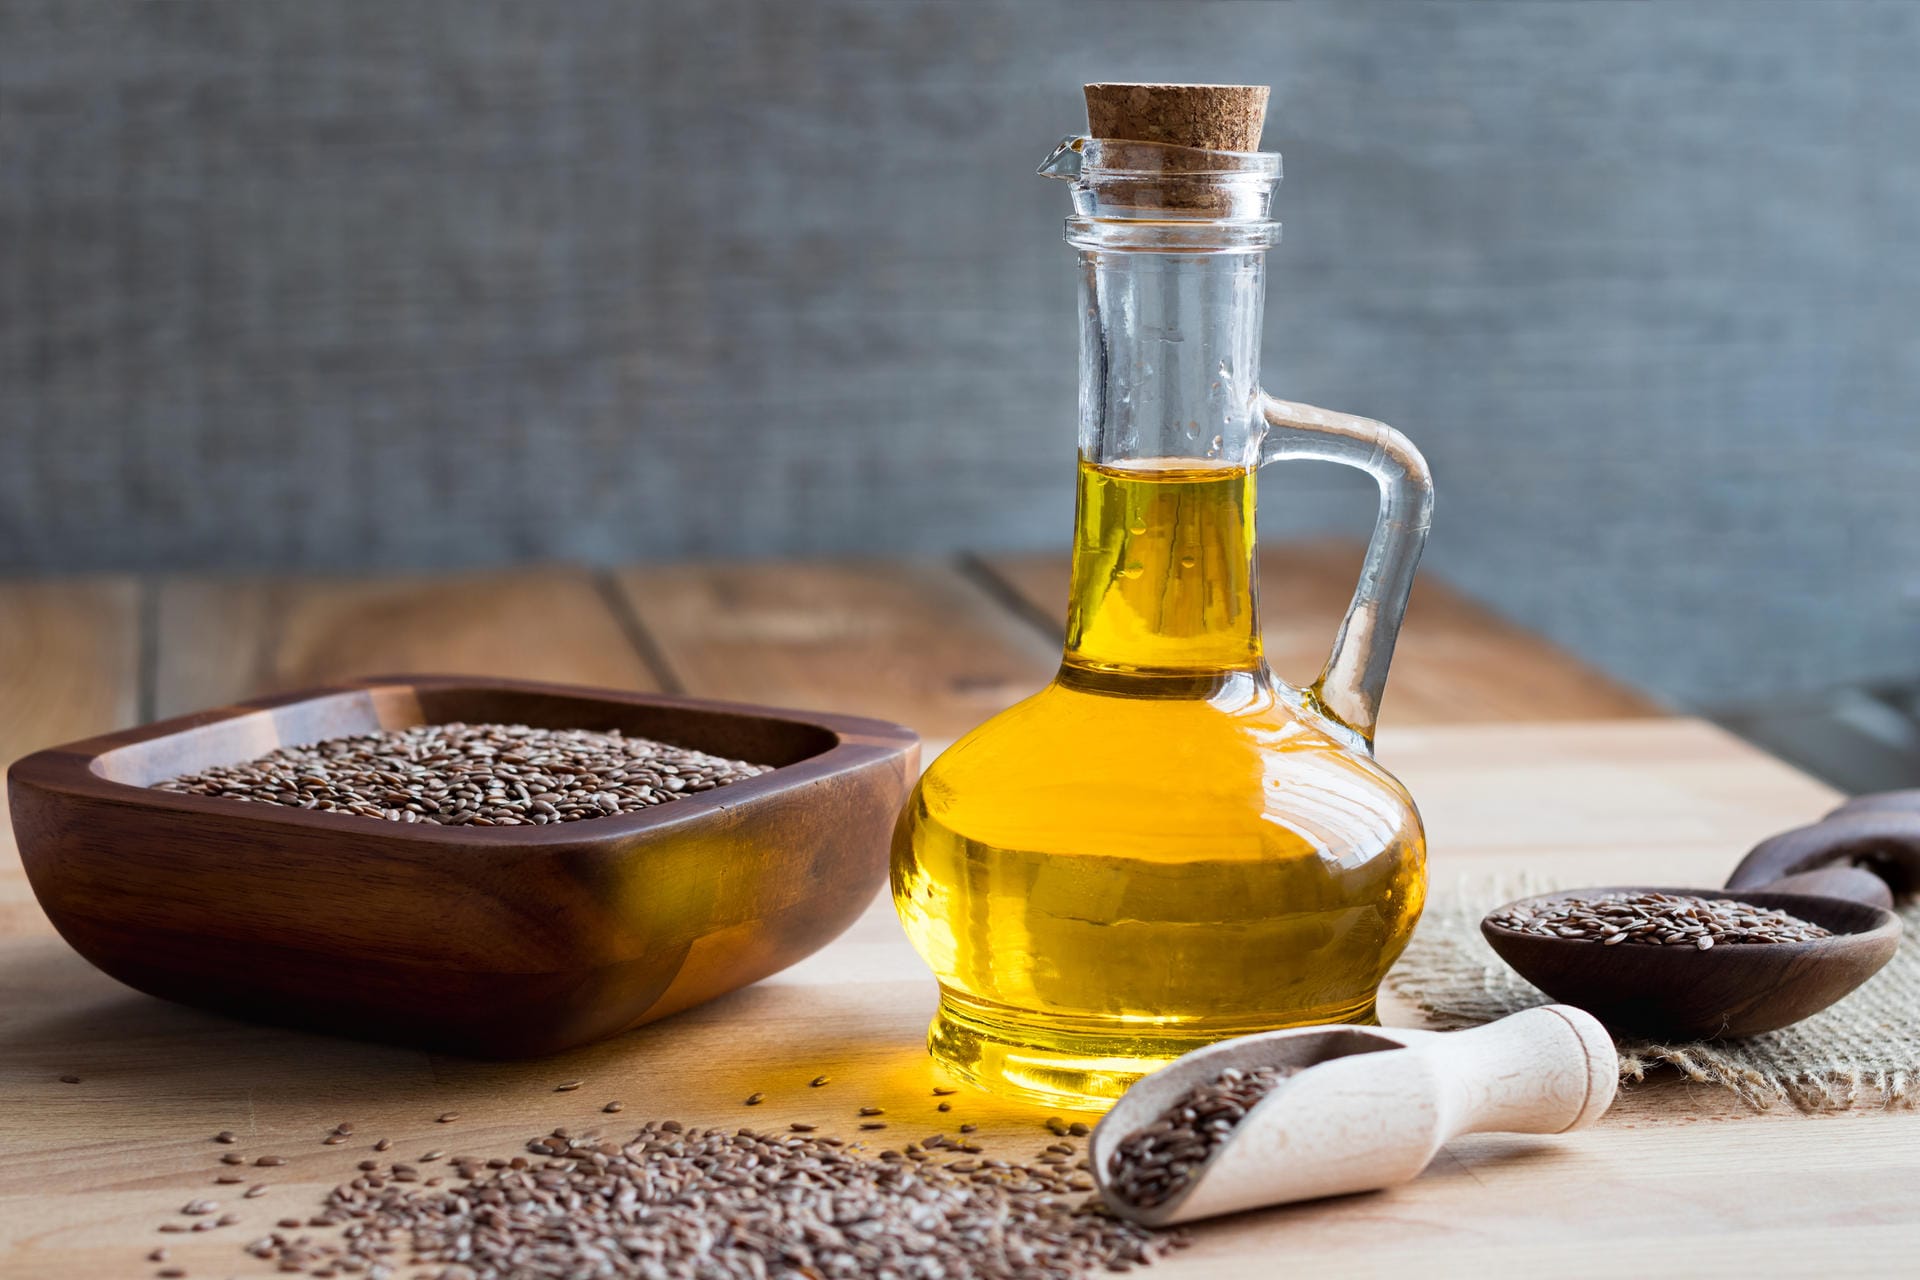 Pflanzliche Öle: Auch Leinöl, Raps- und Walnussöl enthalten viele Omega-3-Fettsäuren. Der sollten Menschen mit Morbus Bechterew diese Öle häufig beim Kochen und Zubereiten von Mahlzeiten verwenden.